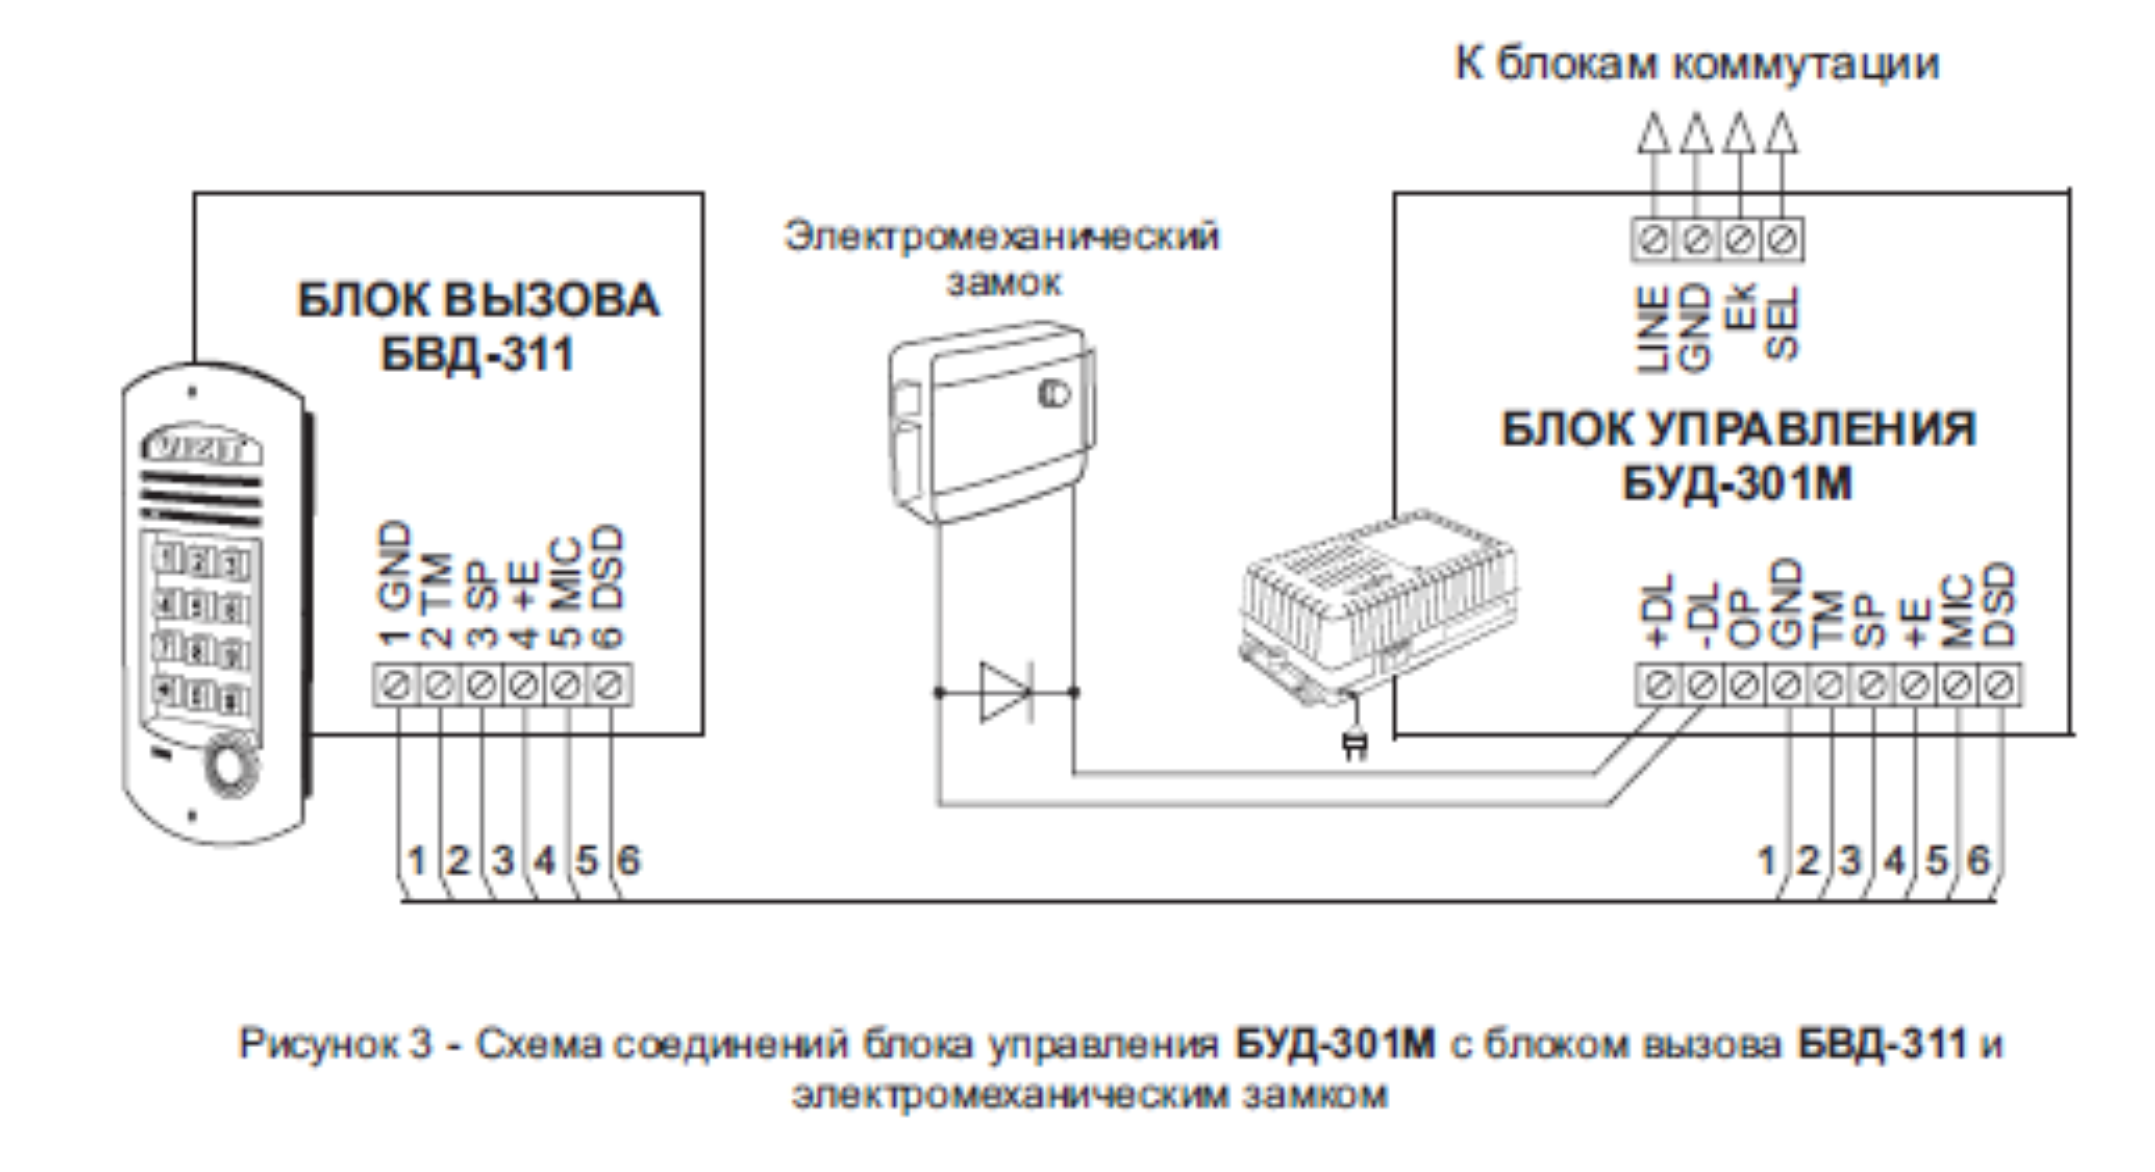 Схема соединений блока управления БУД-301М с блоком вызова БВД-311 и электромеханическим замком